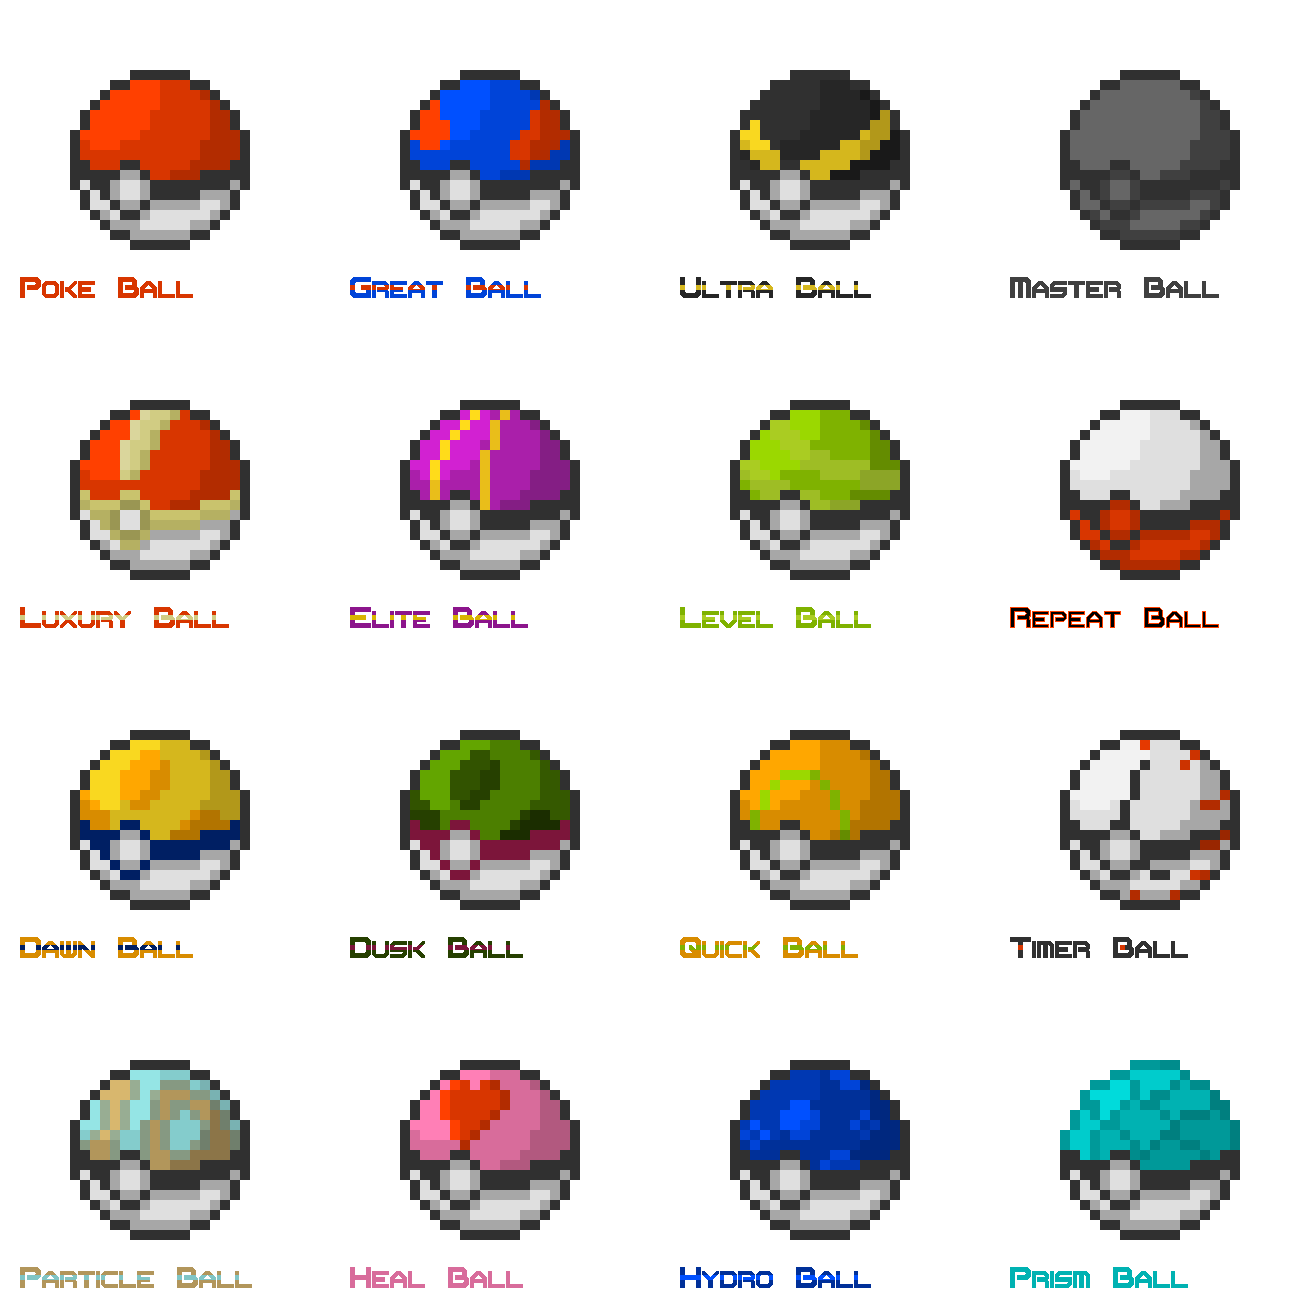 8-bit Pokémon Pixel Art Poké Ball PNG  Pixel art, Cool pixel art, Pixel  pattern